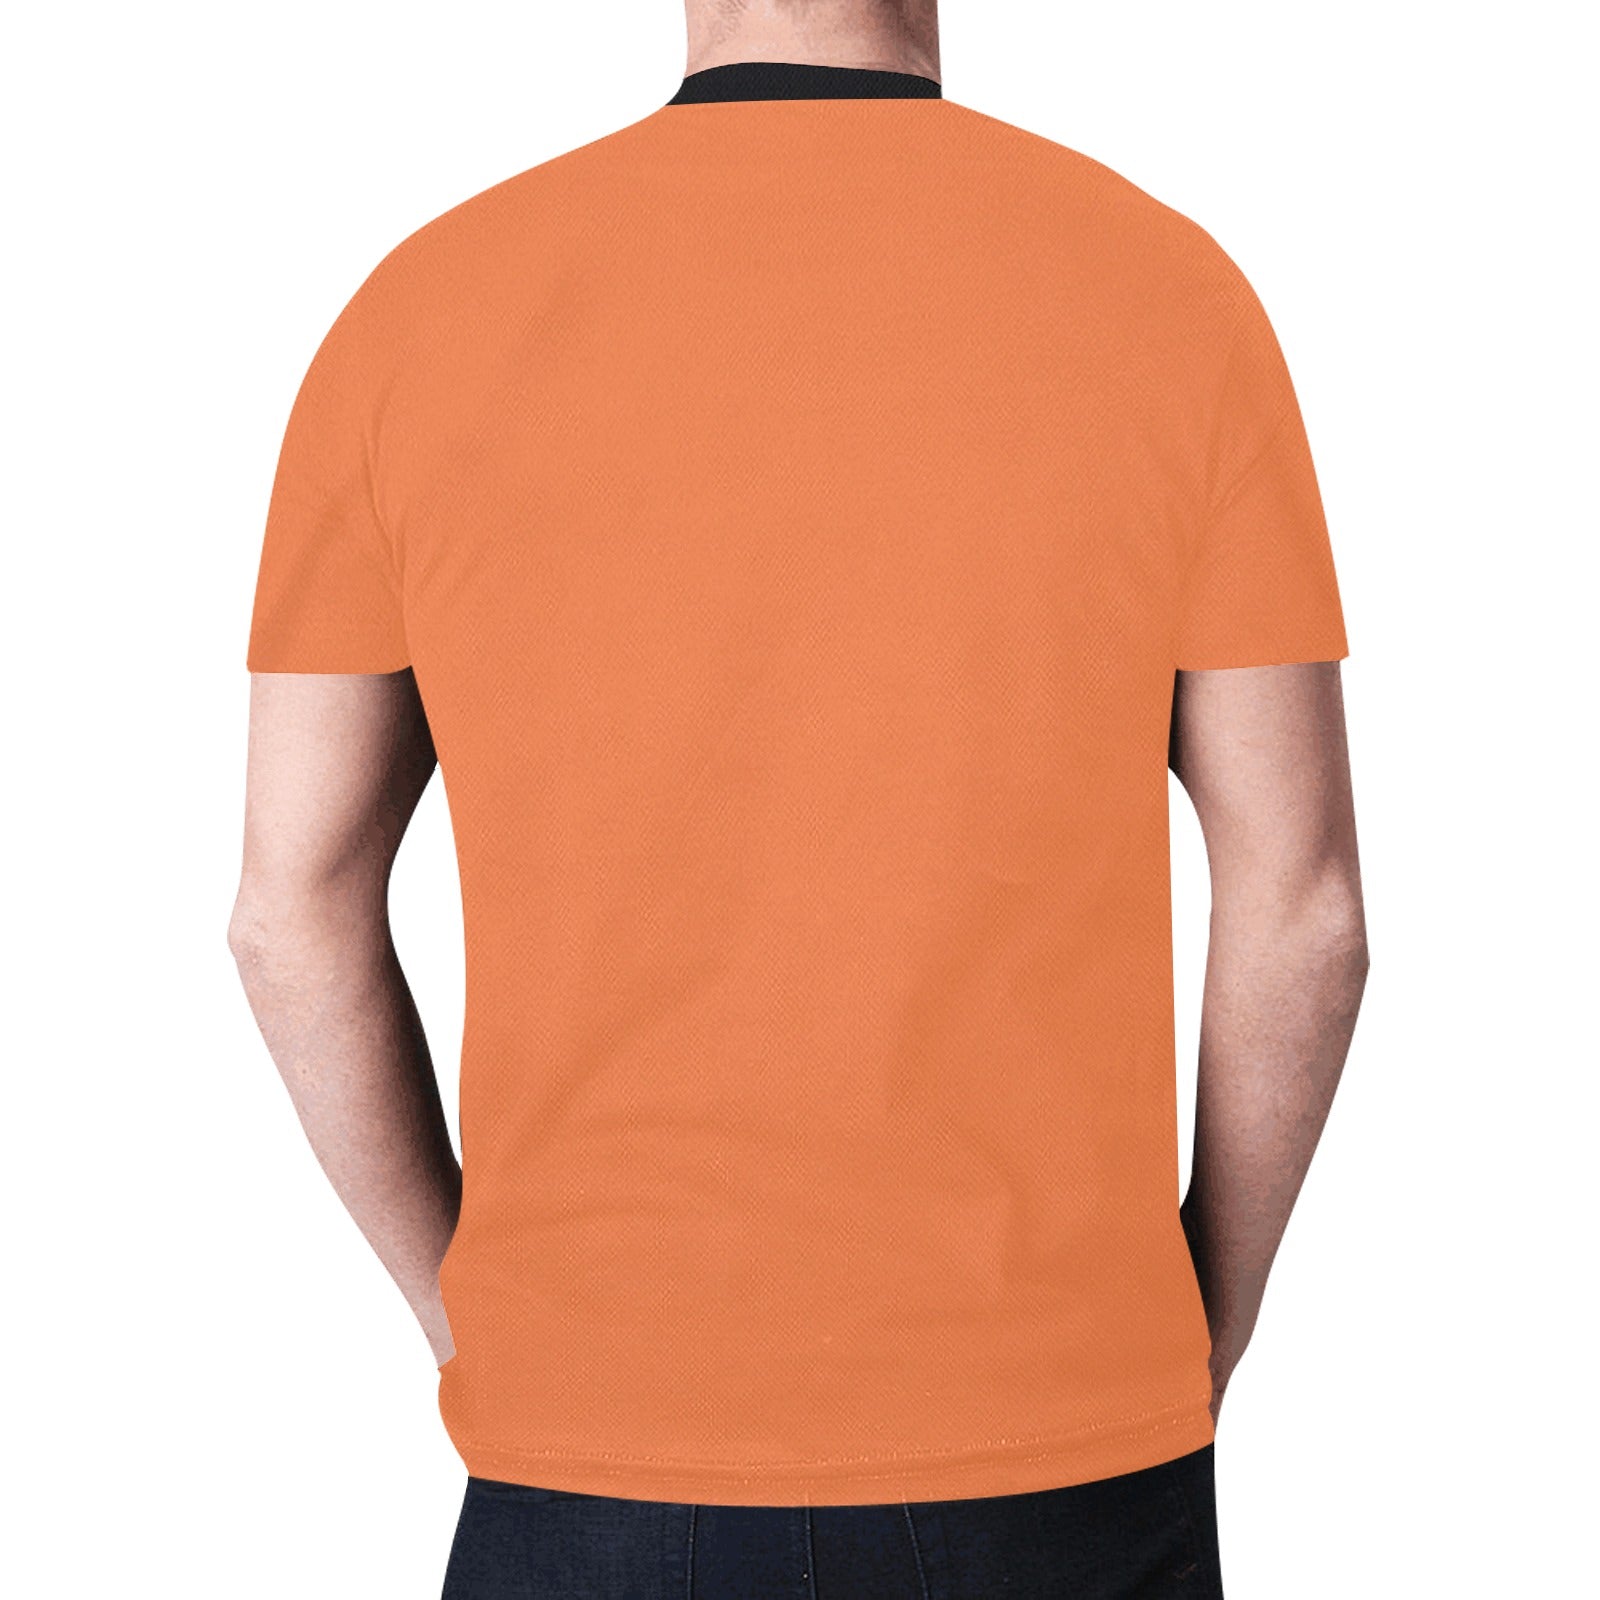 Wolf Spirit Guide (Orange) T-shirt for Men